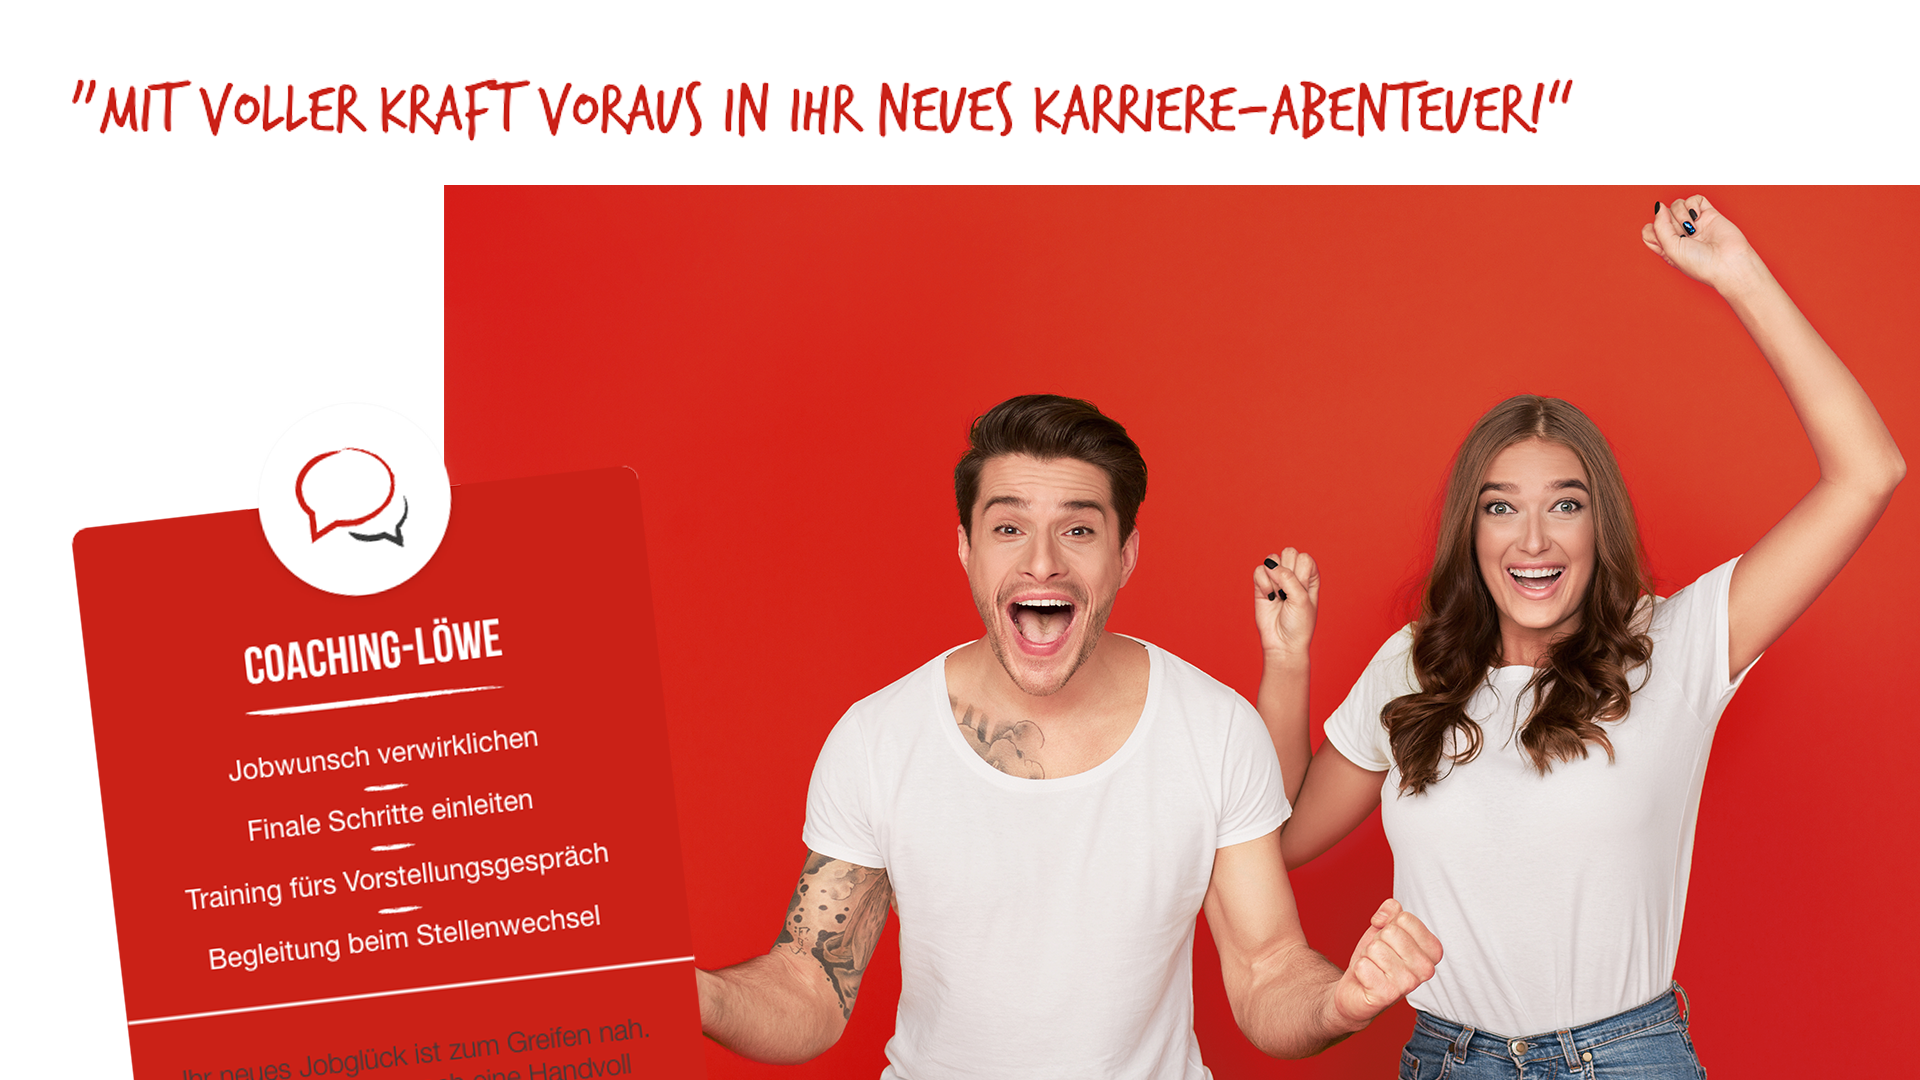 Scribble Werbeagentur in Geilenkirchen, Kreis Heinsberg, zeigt ein Paar, das mit voller Kraft In ein neues Karriere-Abenteuer startet.